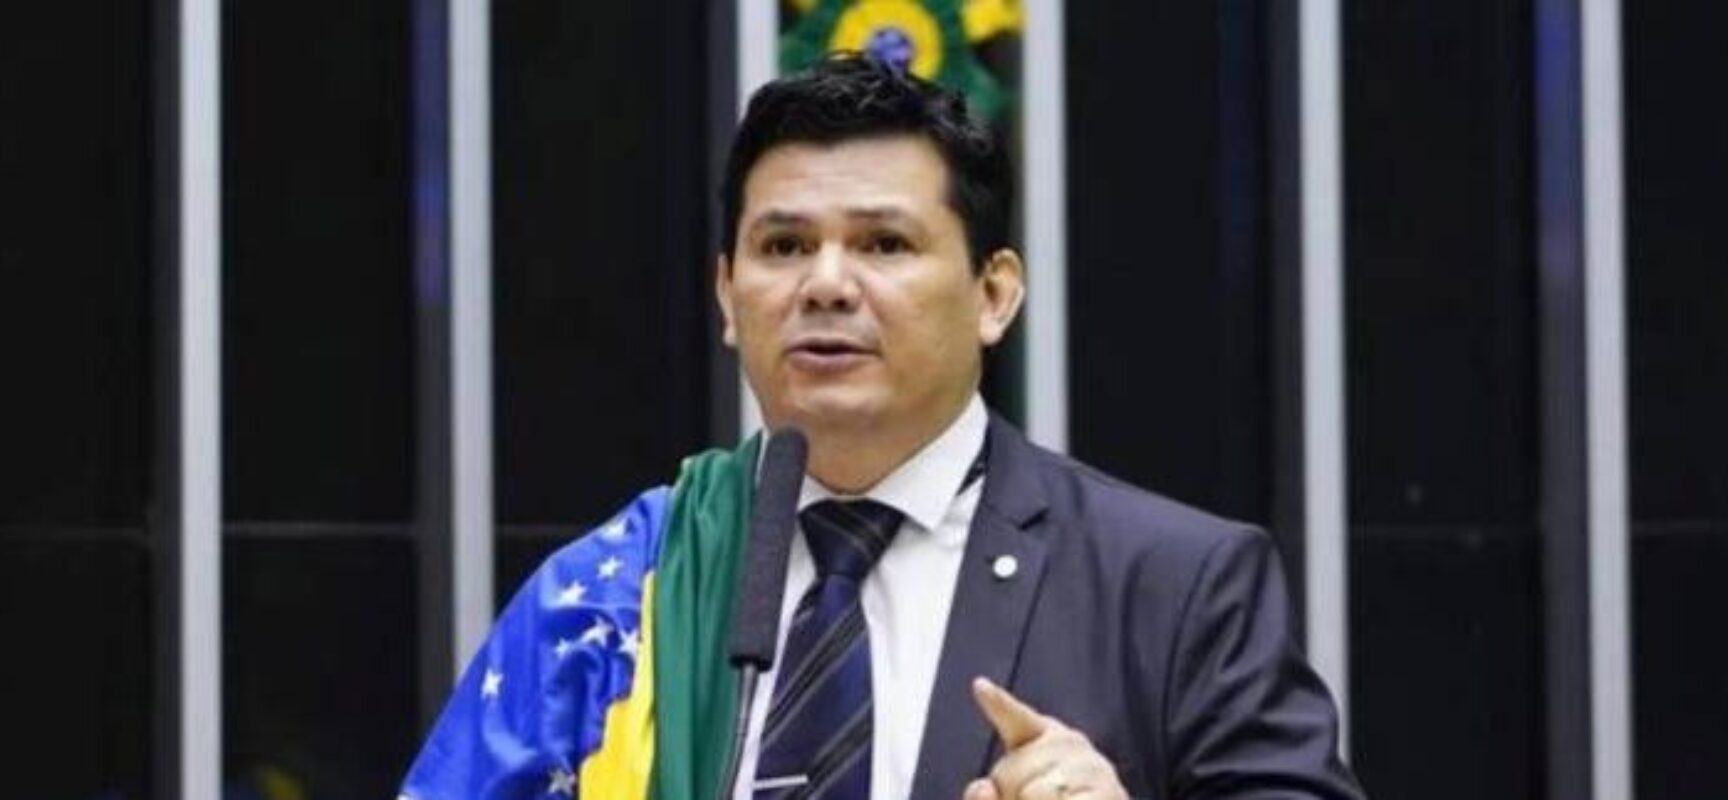 Após pedido de Flávio Dino, PF abre inquérito contra deputado que chamou Lula de “corrupto”